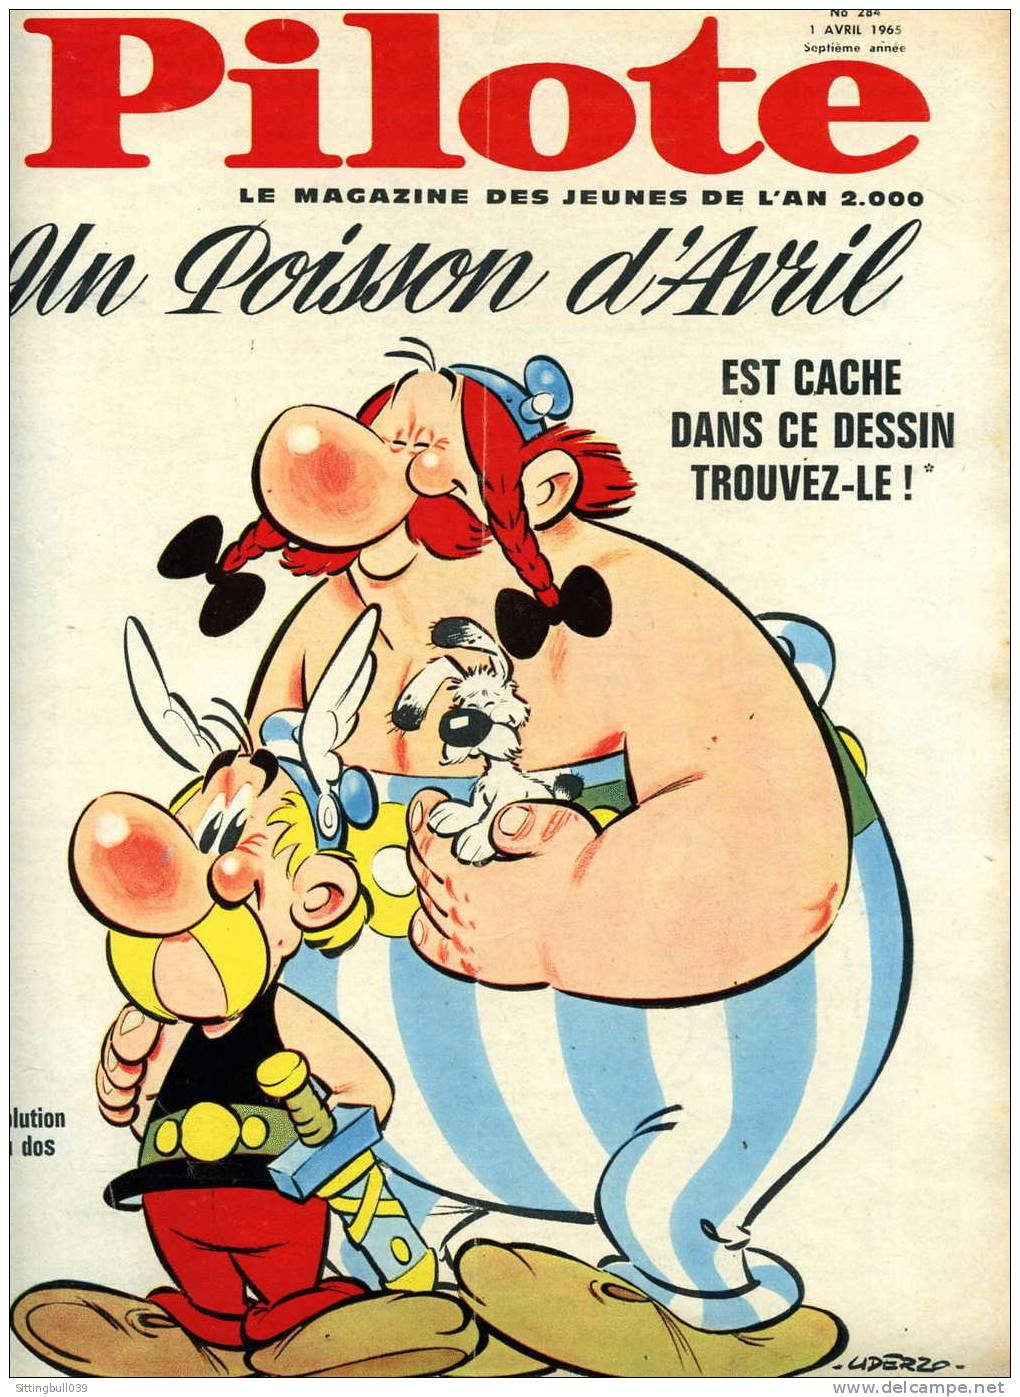 A revista "Pilote" com Asterix e Obelix na capa